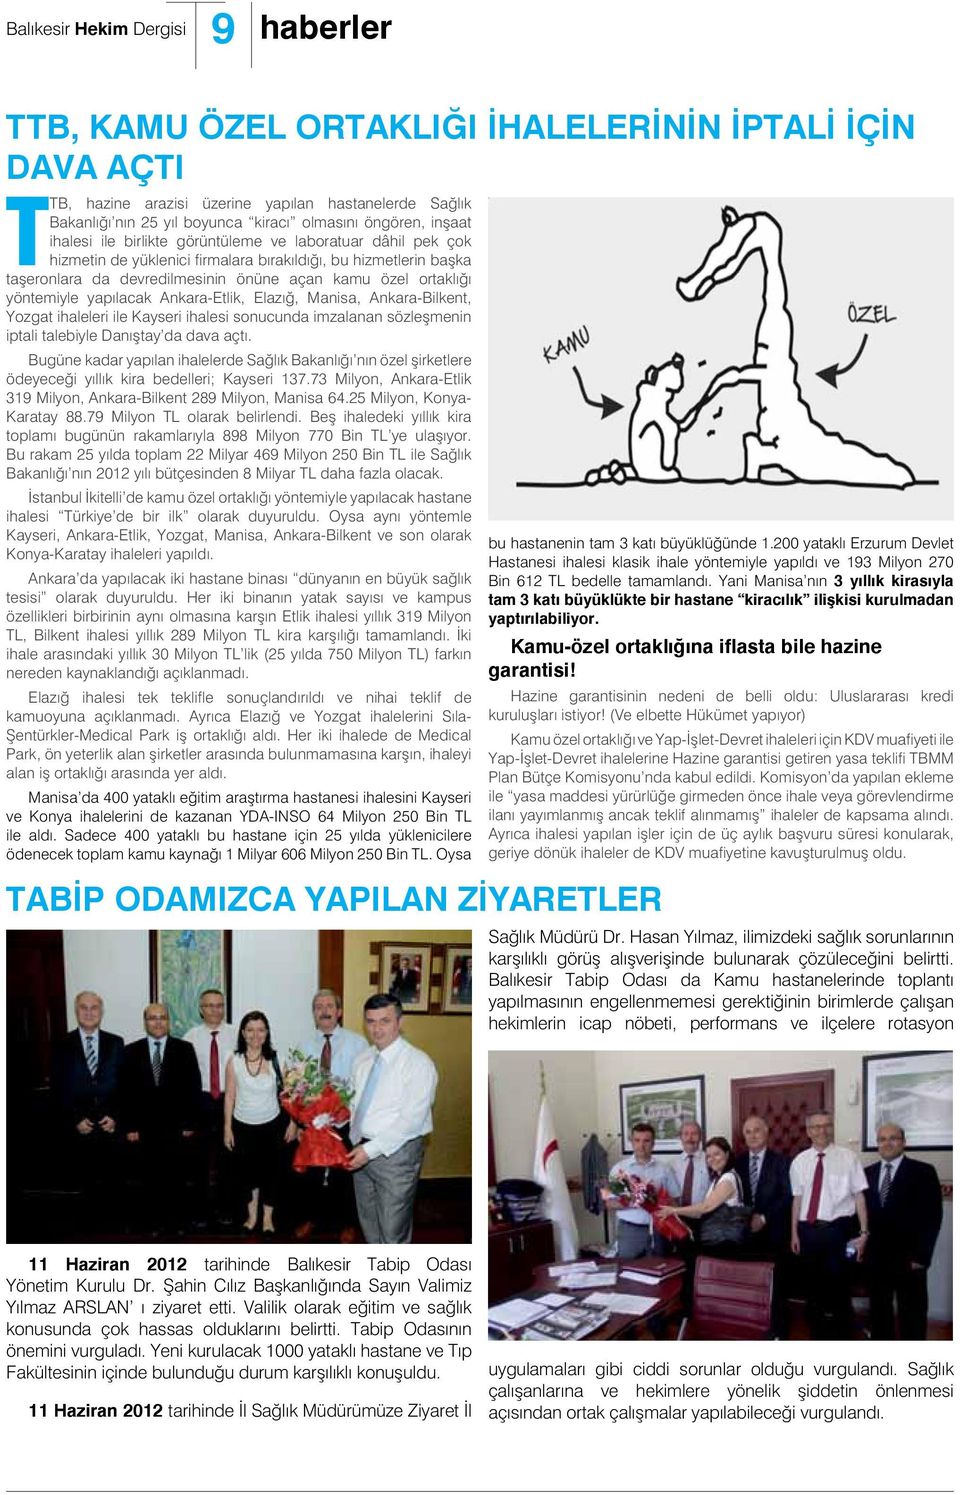 Ankara-Etlik, Elazığ, Manisa, Ankara-Bilkent, Yozgat ihaleleri ile Kayseri ihalesi sonucunda imzalanan sözleşmenin iptali talebiyle Danıştay da dava açtı.